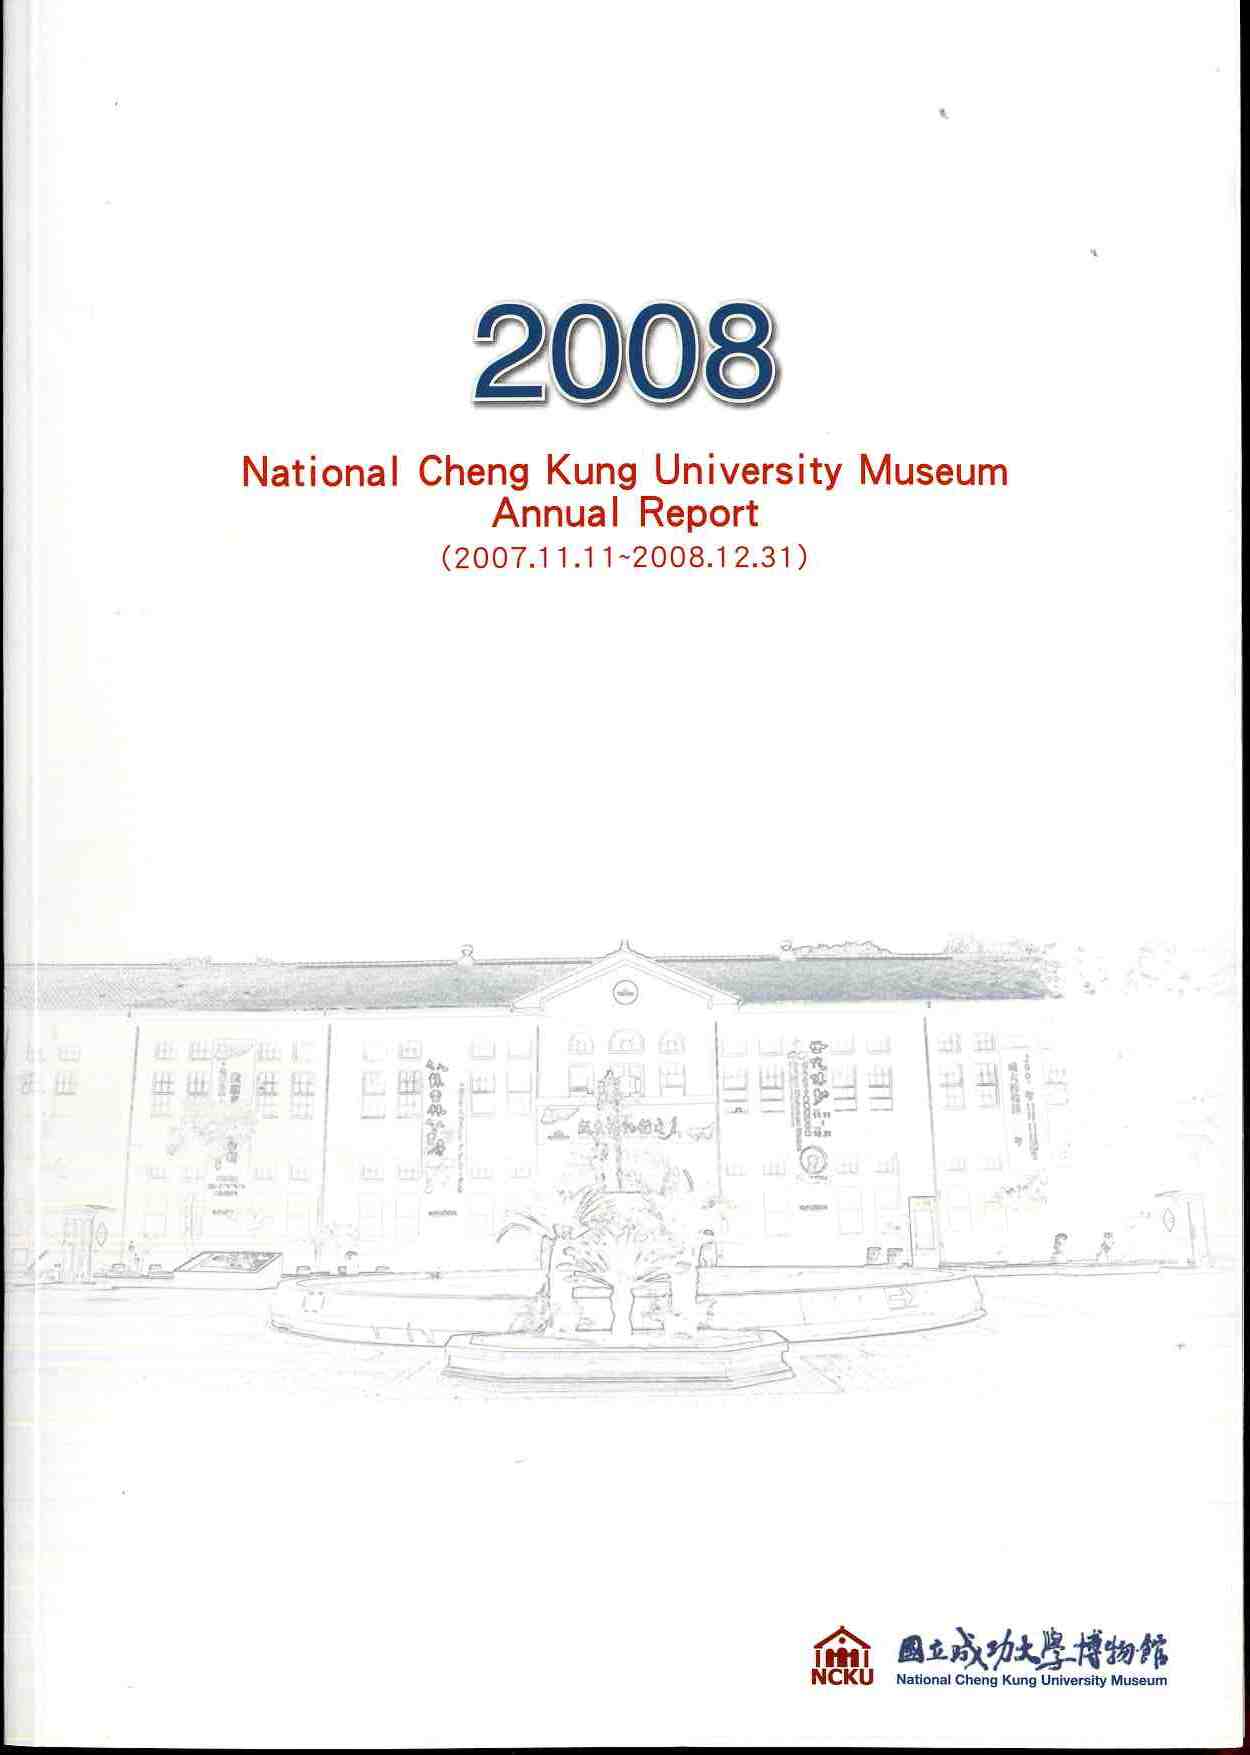 NCKU Museum Annual Report No.1 (2008)